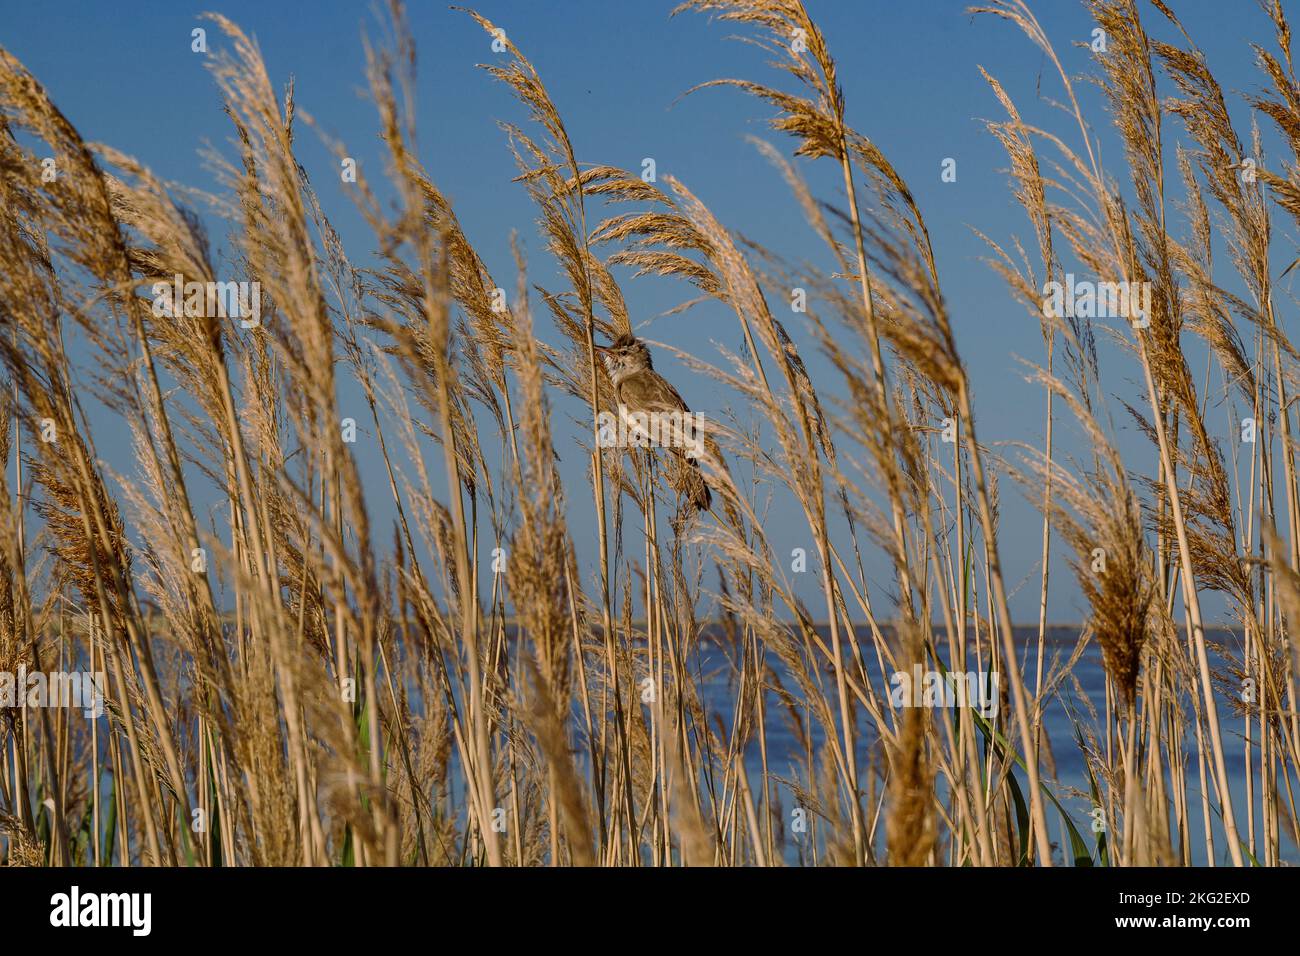 Nahaufnahme Vogel versteckt im Gras Konzeptfoto. Getrocknete Pflanzen. Sommerzeit. Seitenansicht Fotografie mit wilden Unkräuter Wiese auf dem Hintergrund. Hochwertiges Bild Stockfoto